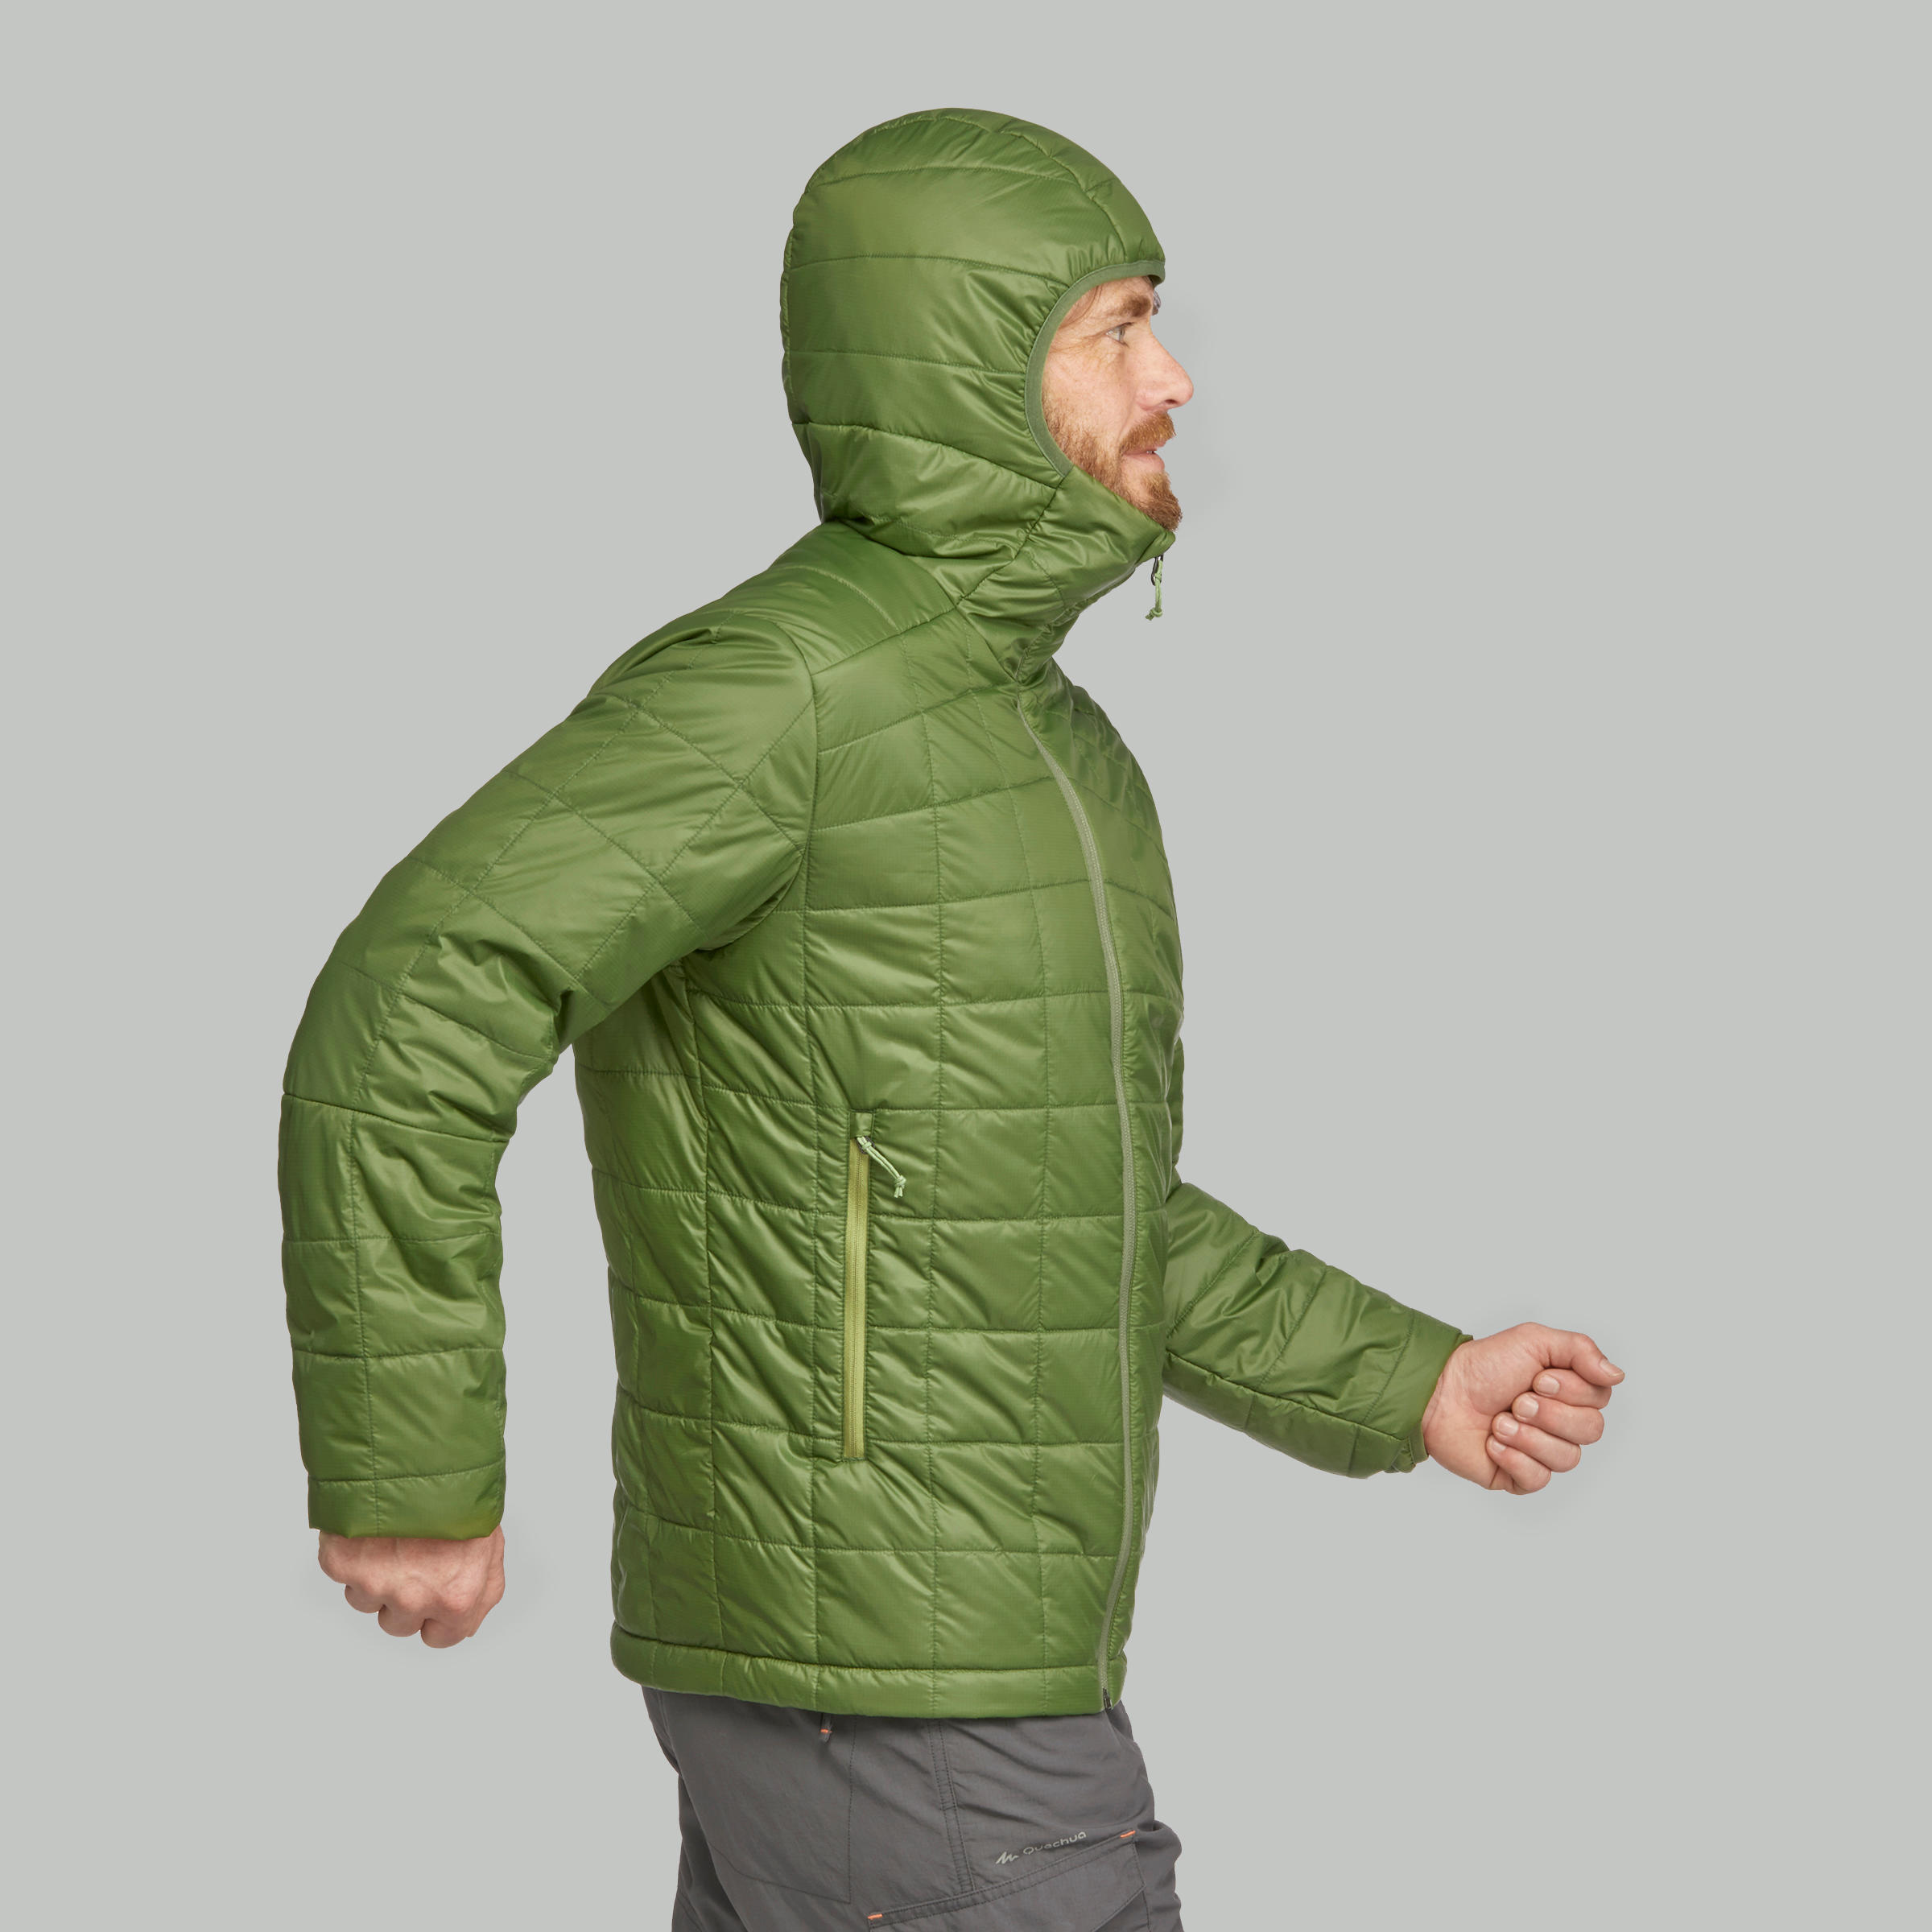 mountain trek jacket